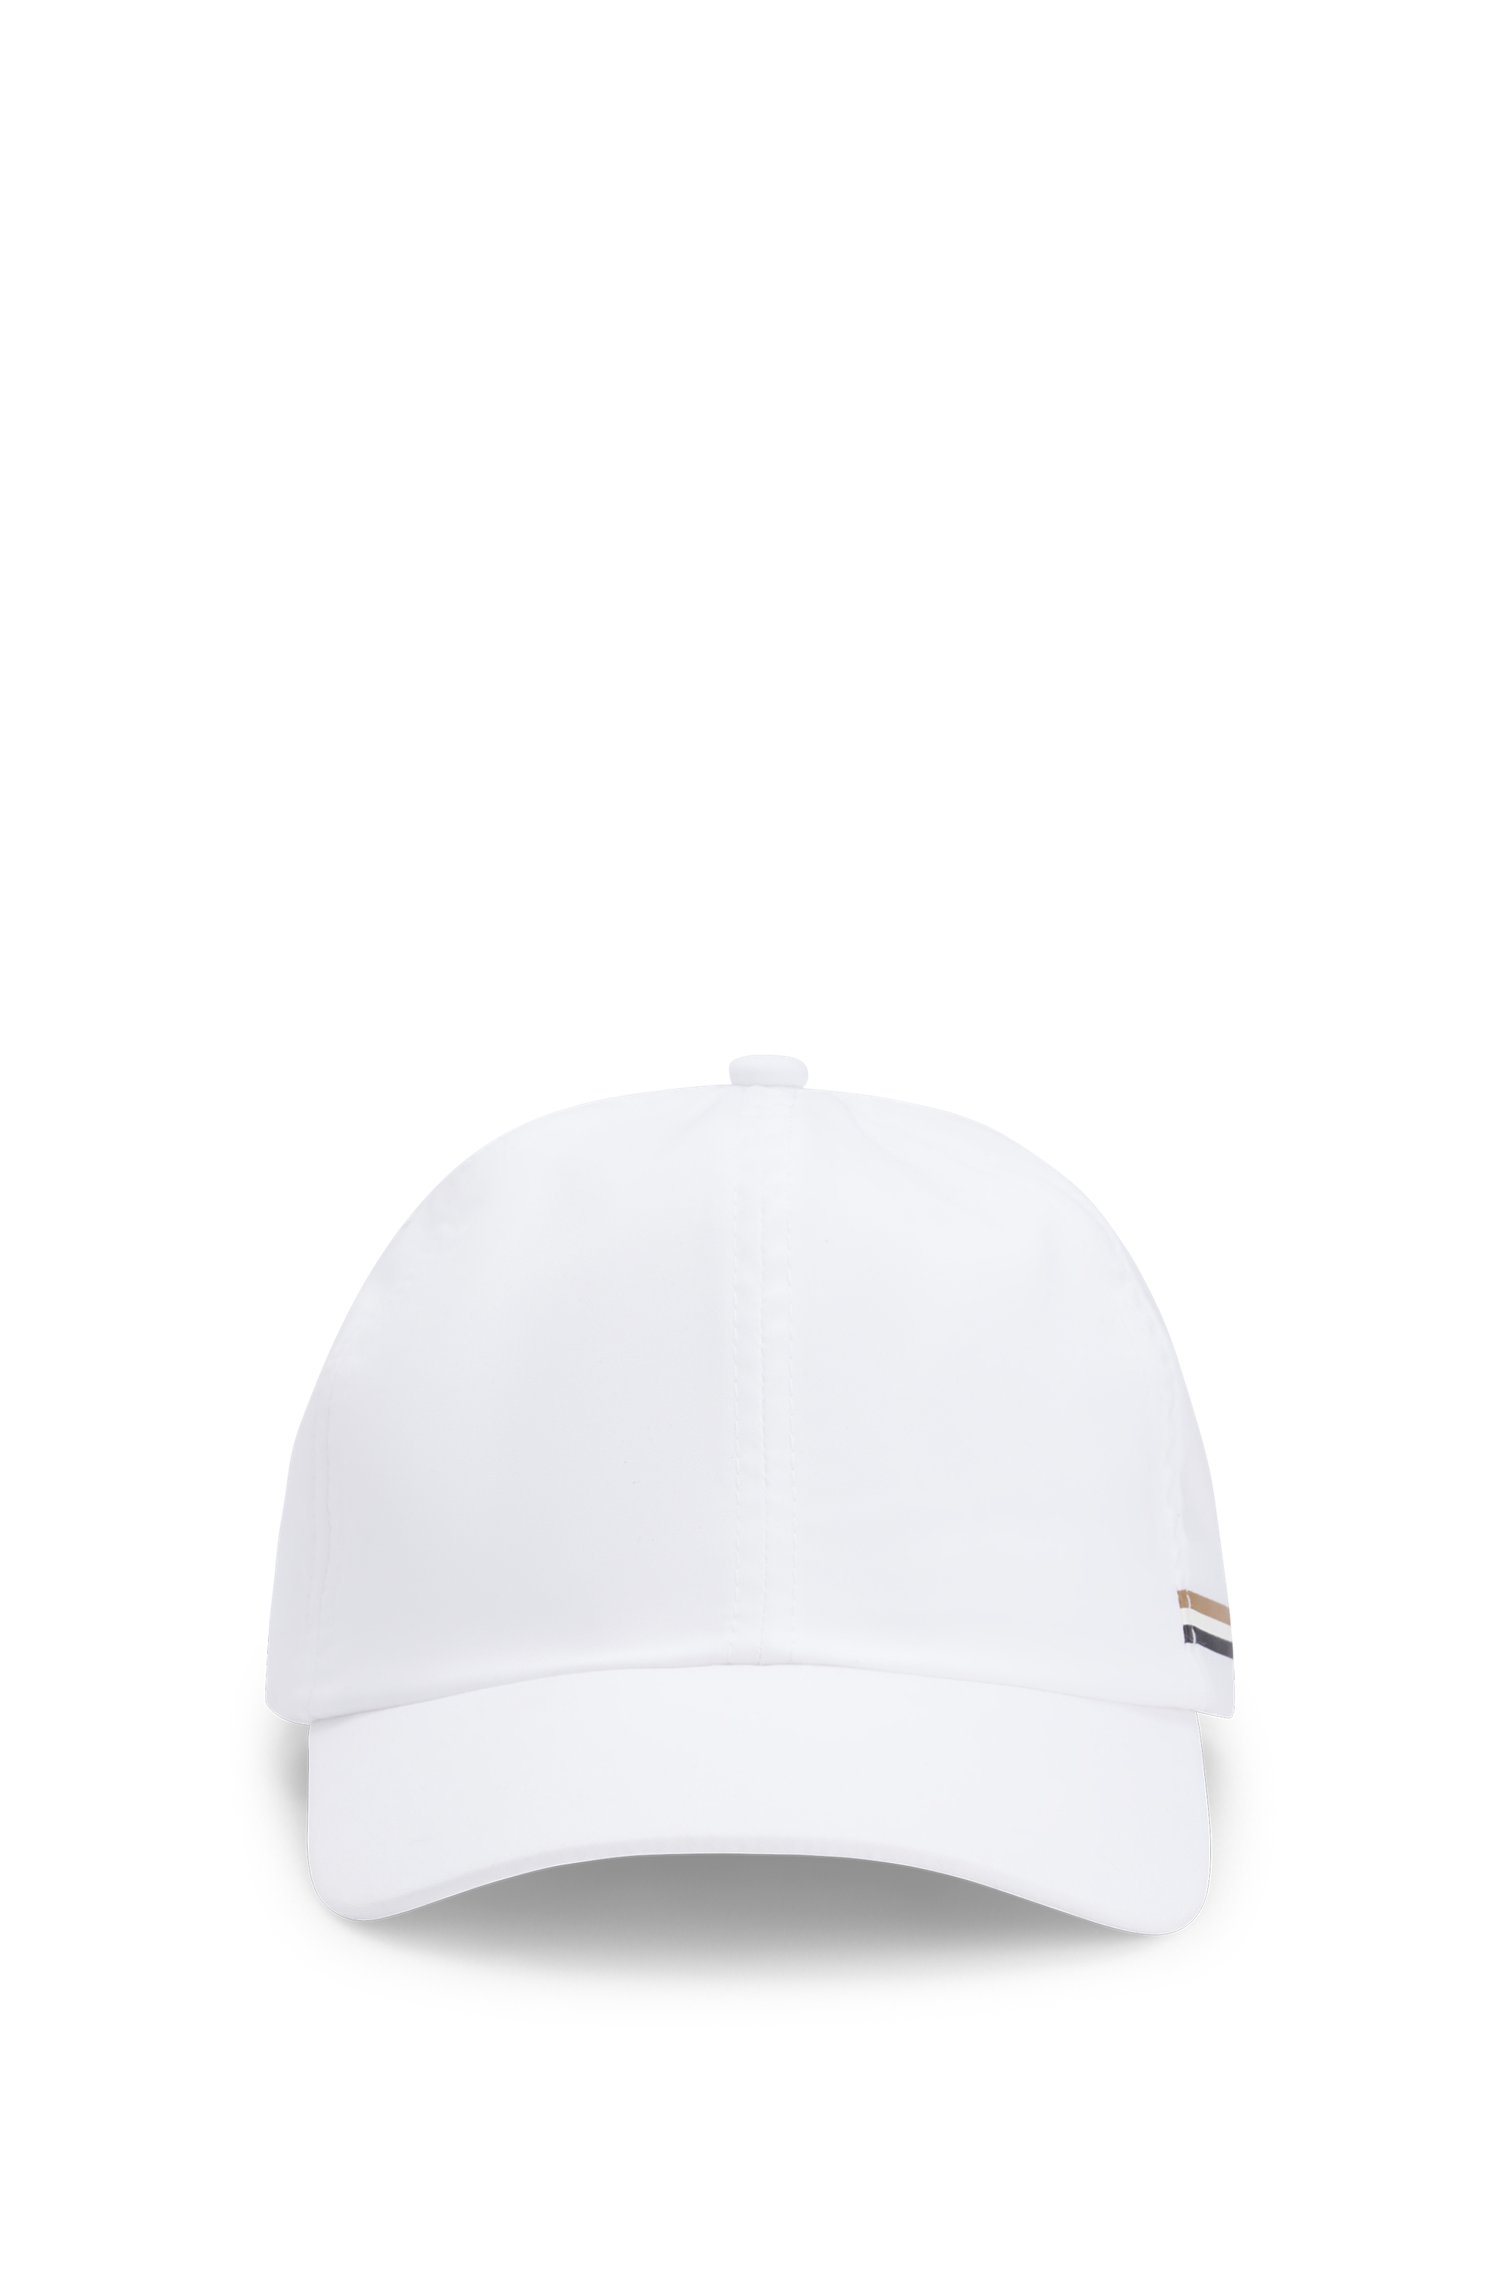 BOSS x Matteo Berrettini water-repellent cap with signature details